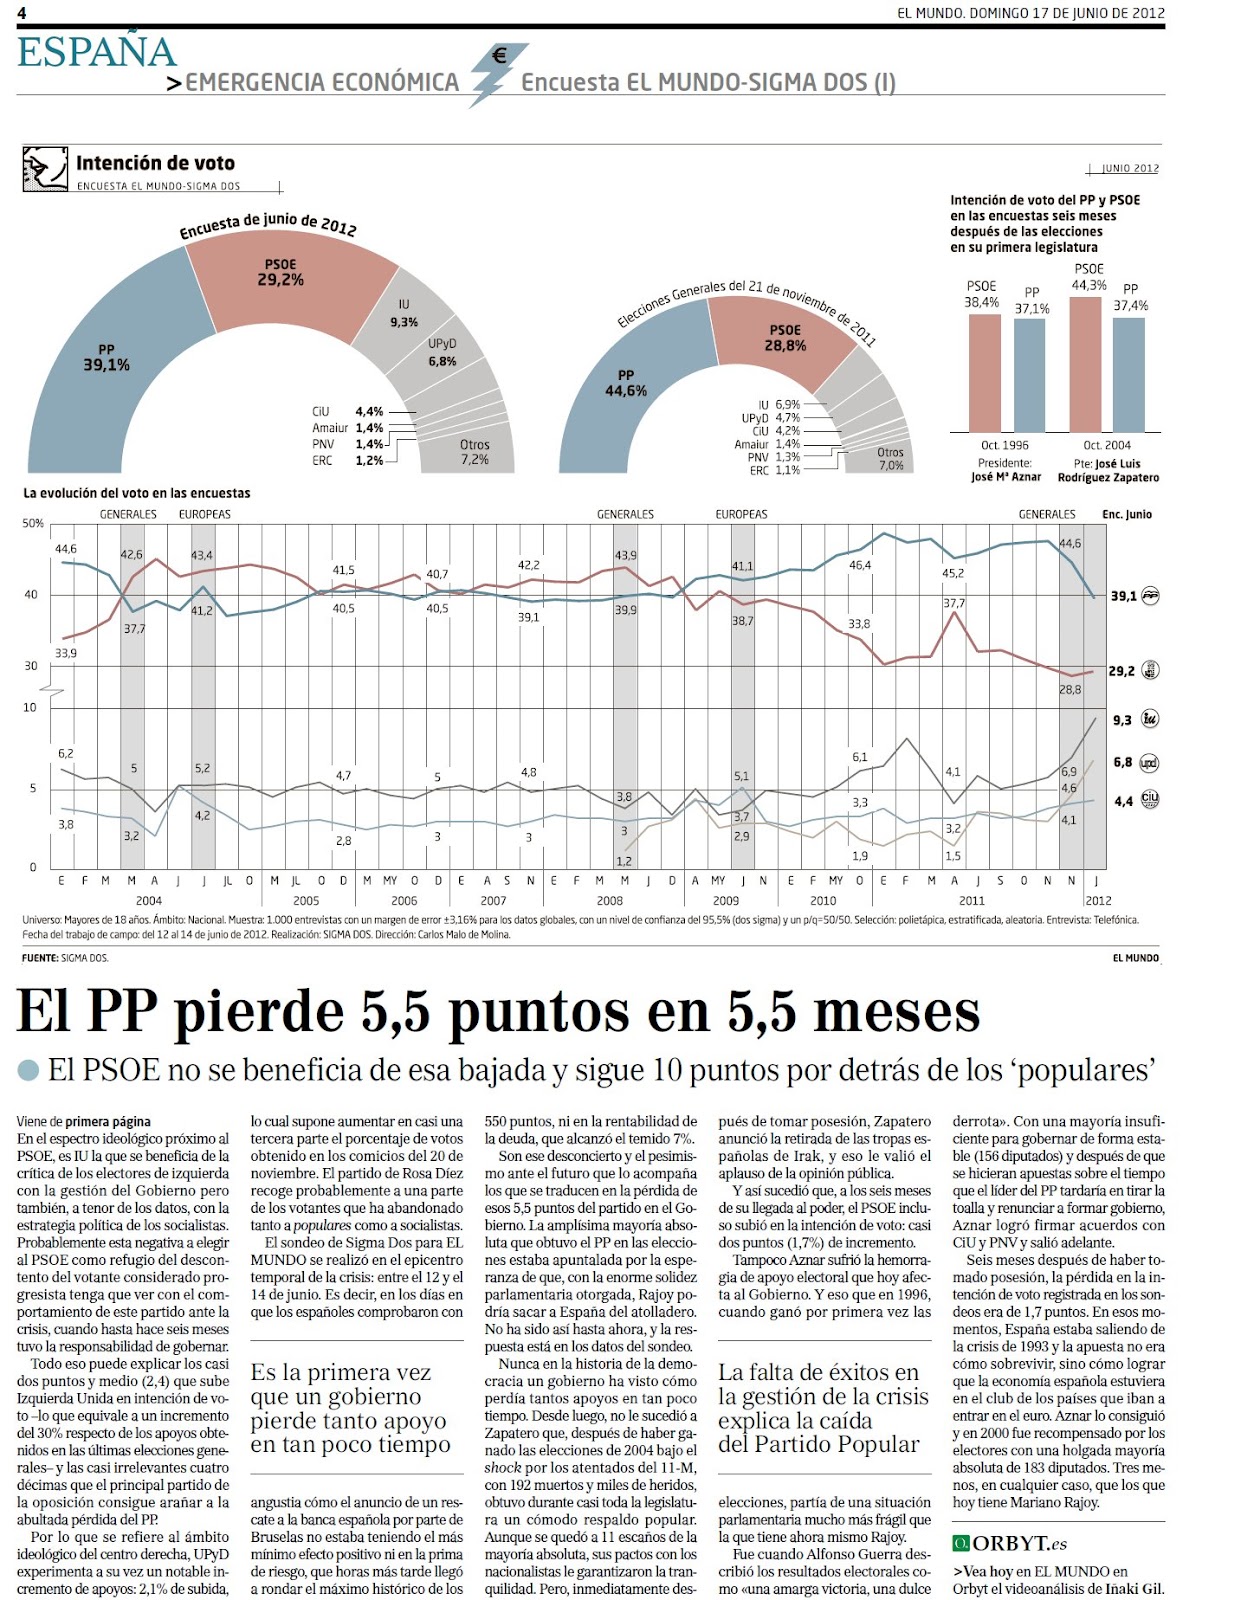 Encuesta Elecciones Generales El Mundo (17/06/2012) - Página 2 1a+Encuesta+EL+MUNDO-SIGMA+DOS+(I)+Intencion+de+voto